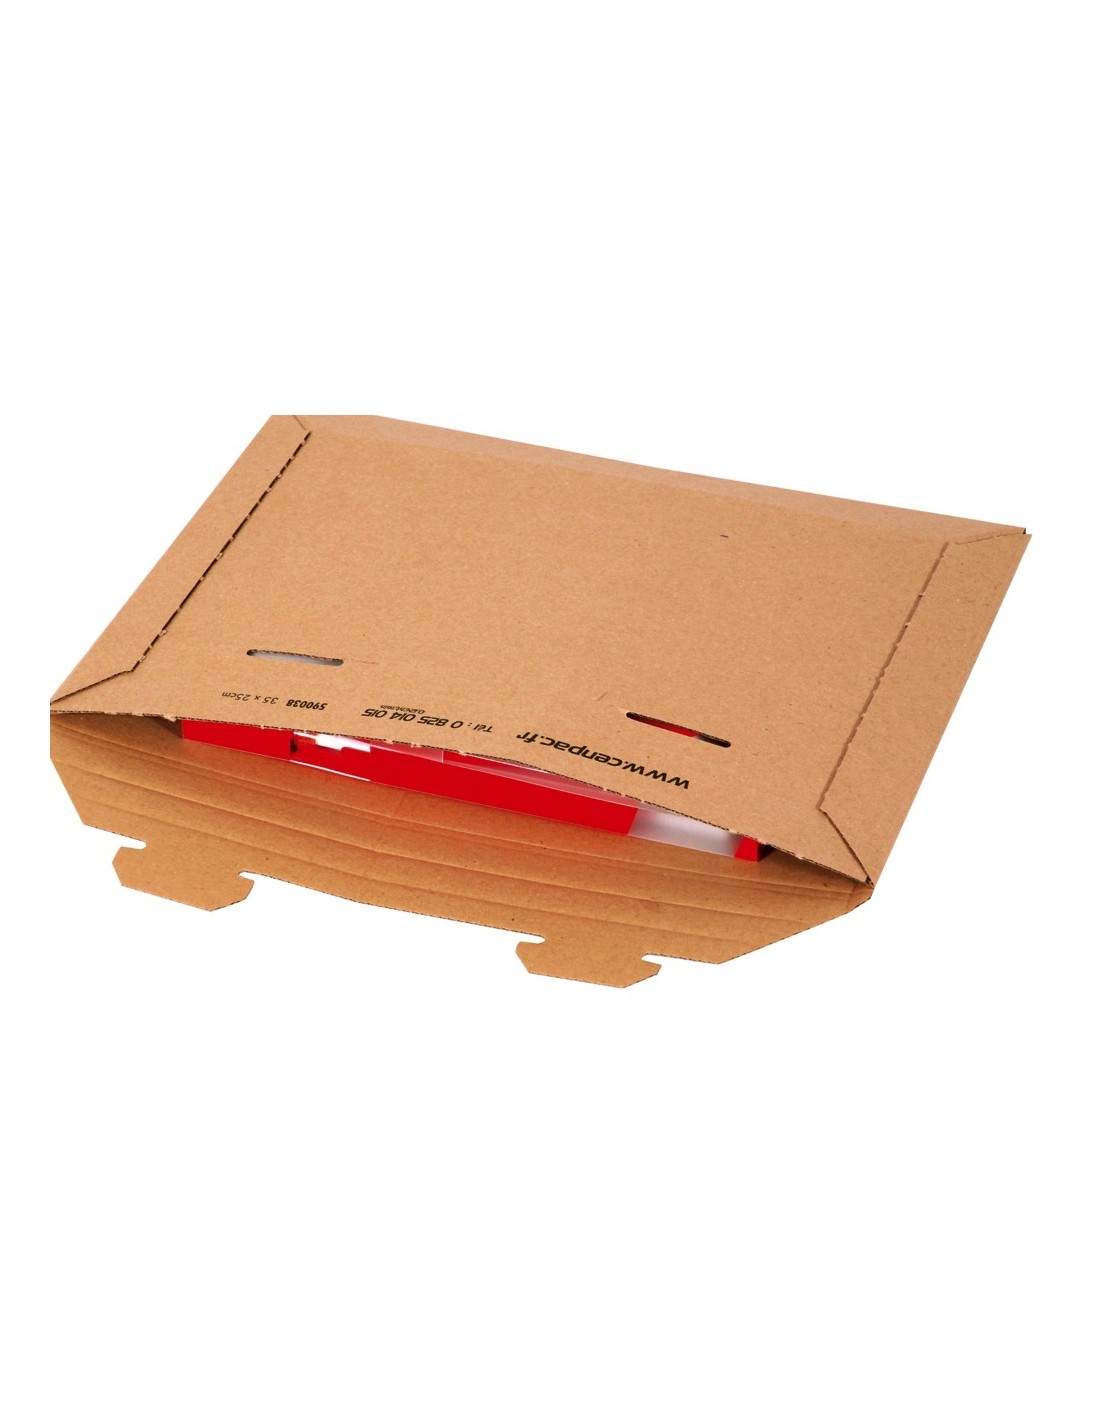 Pochette carton avec fermeture adhésive